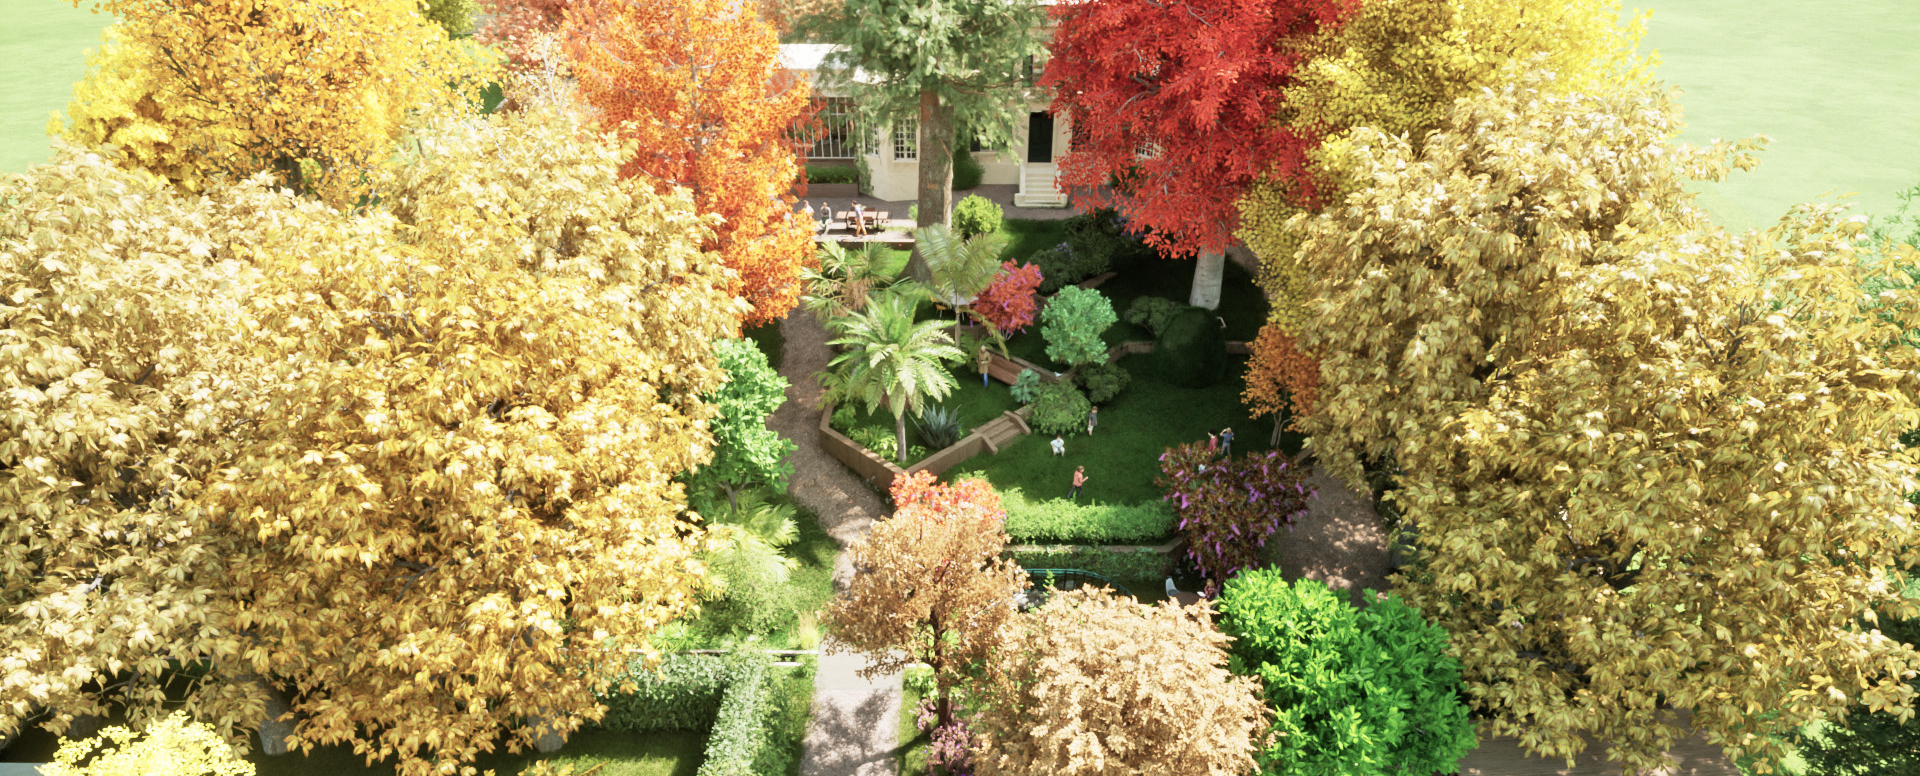 Apis Florae paysagiste parc-arbore-en-terrasses_parking allee carrossable jardin potager aromatique et poulailler avec bassin